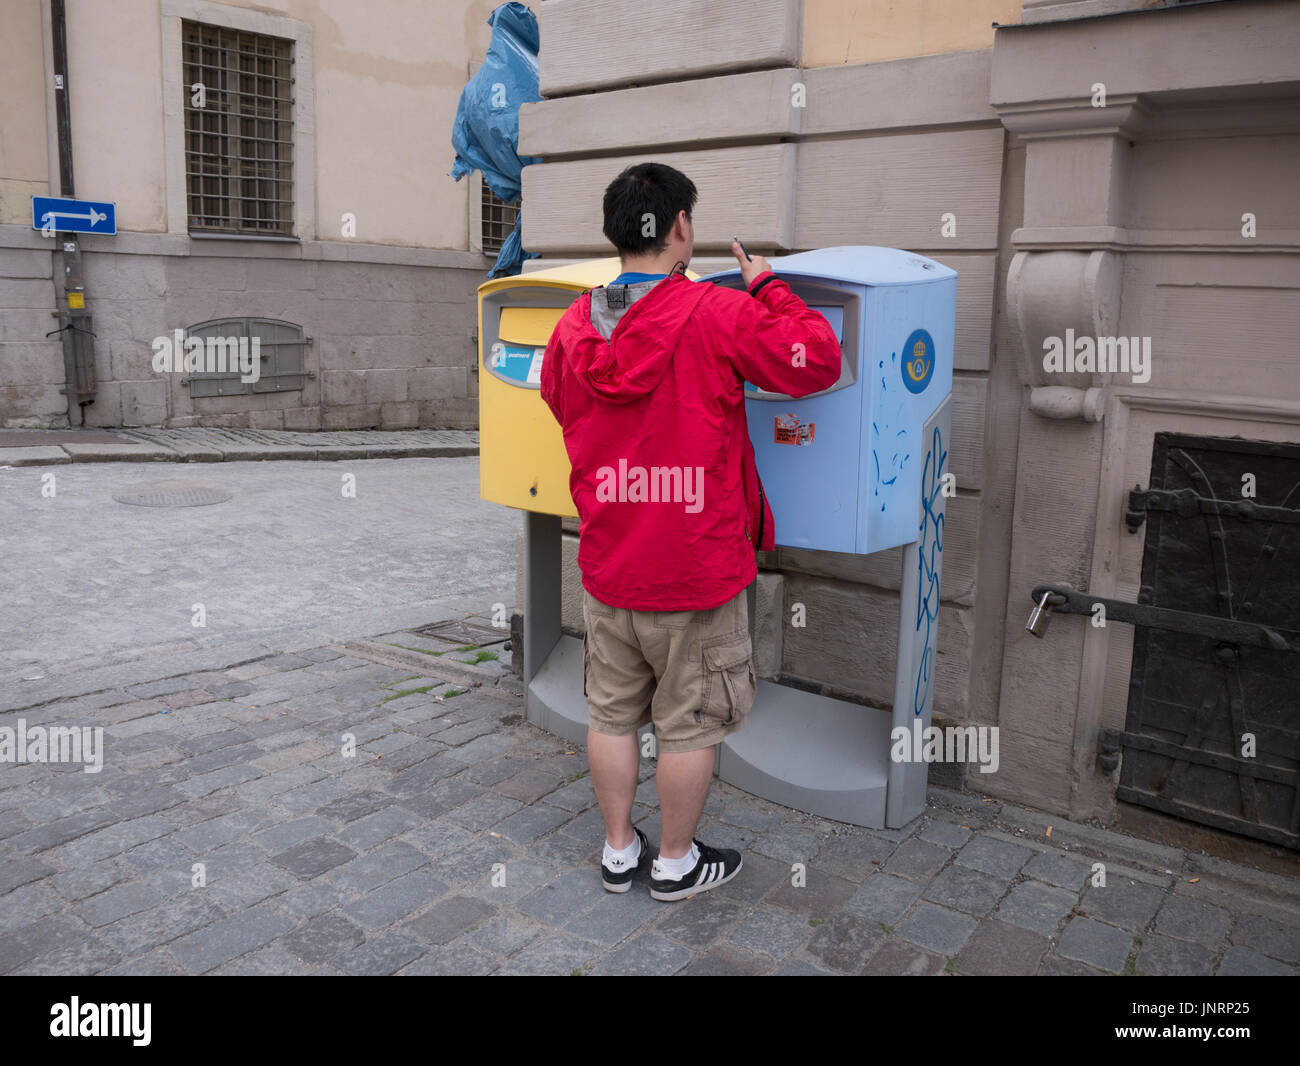 Touristen buchen Postkarte ins Postnord schwedische Post Briefkasten  Stockholm Stockfotografie - Alamy